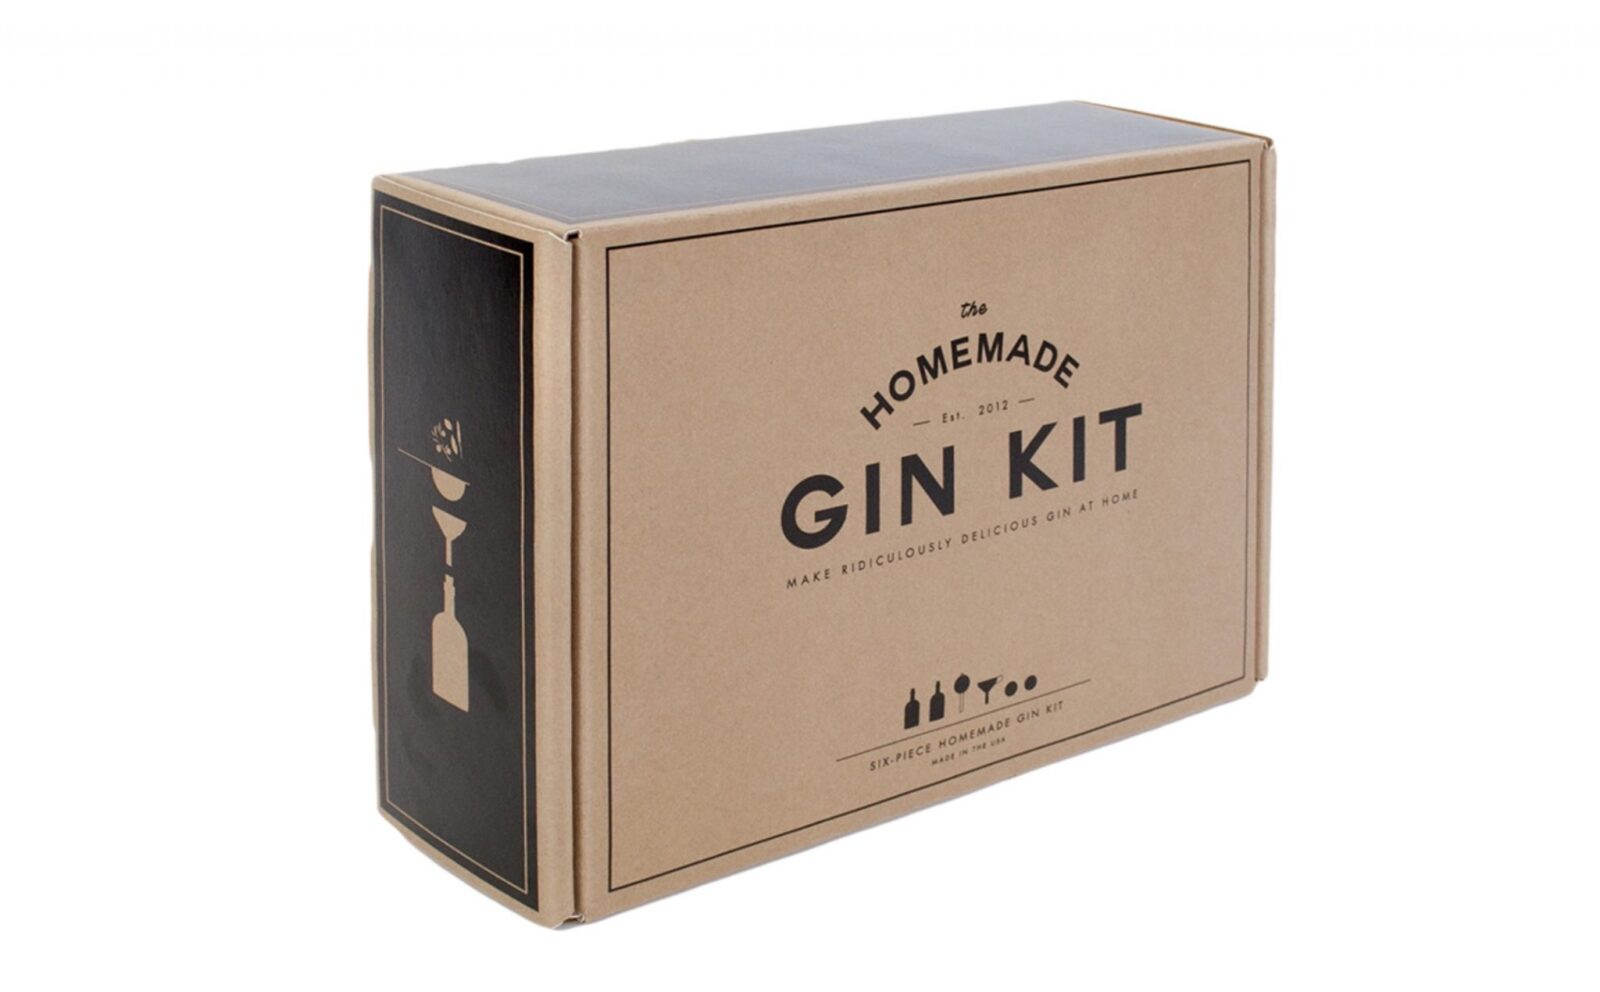 The Homemade Gin Kit – The Homemade Gin Kit